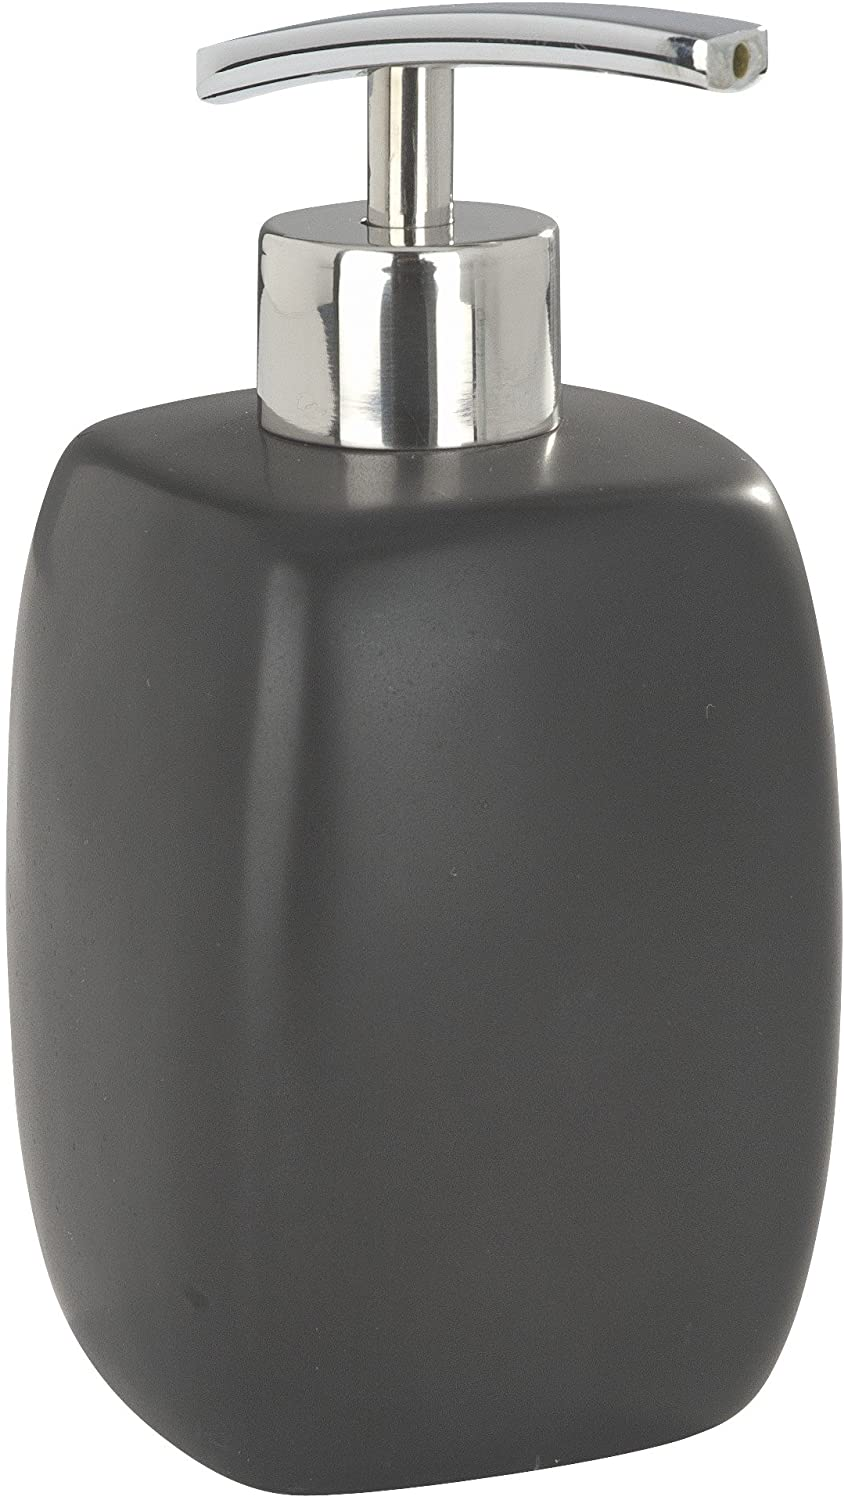 Seifenspender Faro Black - Flüssigseifen-Spender, Spülmittel-Spender Fassungsvermögen: 0.44 l, Keramik, 8 x 15 x 8 cm, Schwarz